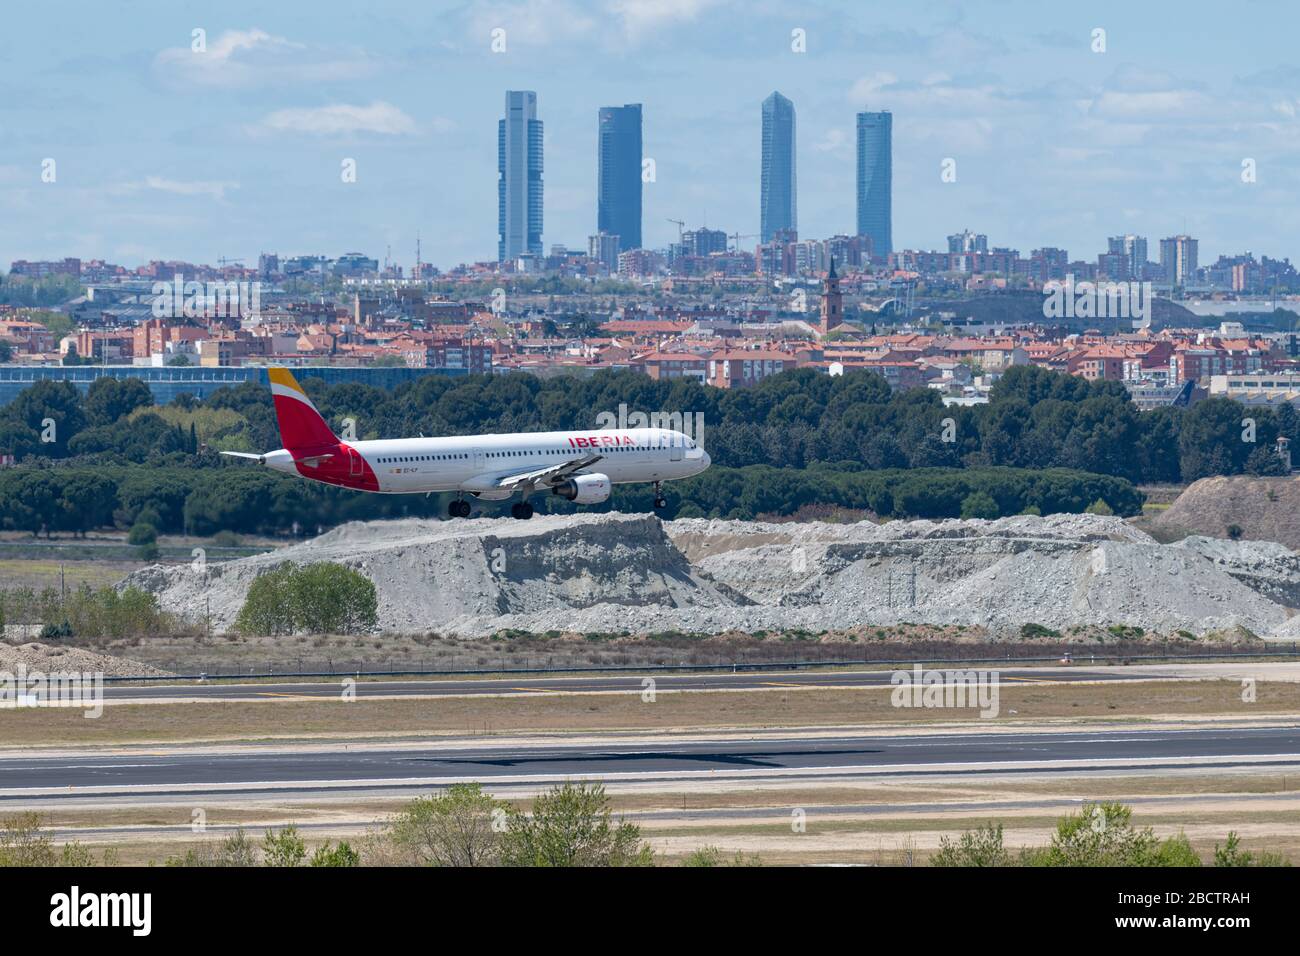 MADRID, SPAGNA - 14 APRILE 2019: Iberia Airlines Airbus A320 volo passeggeri a Madrid-Barajas aeroporto internazionale Adolfo Suarez in ritardo Foto Stock